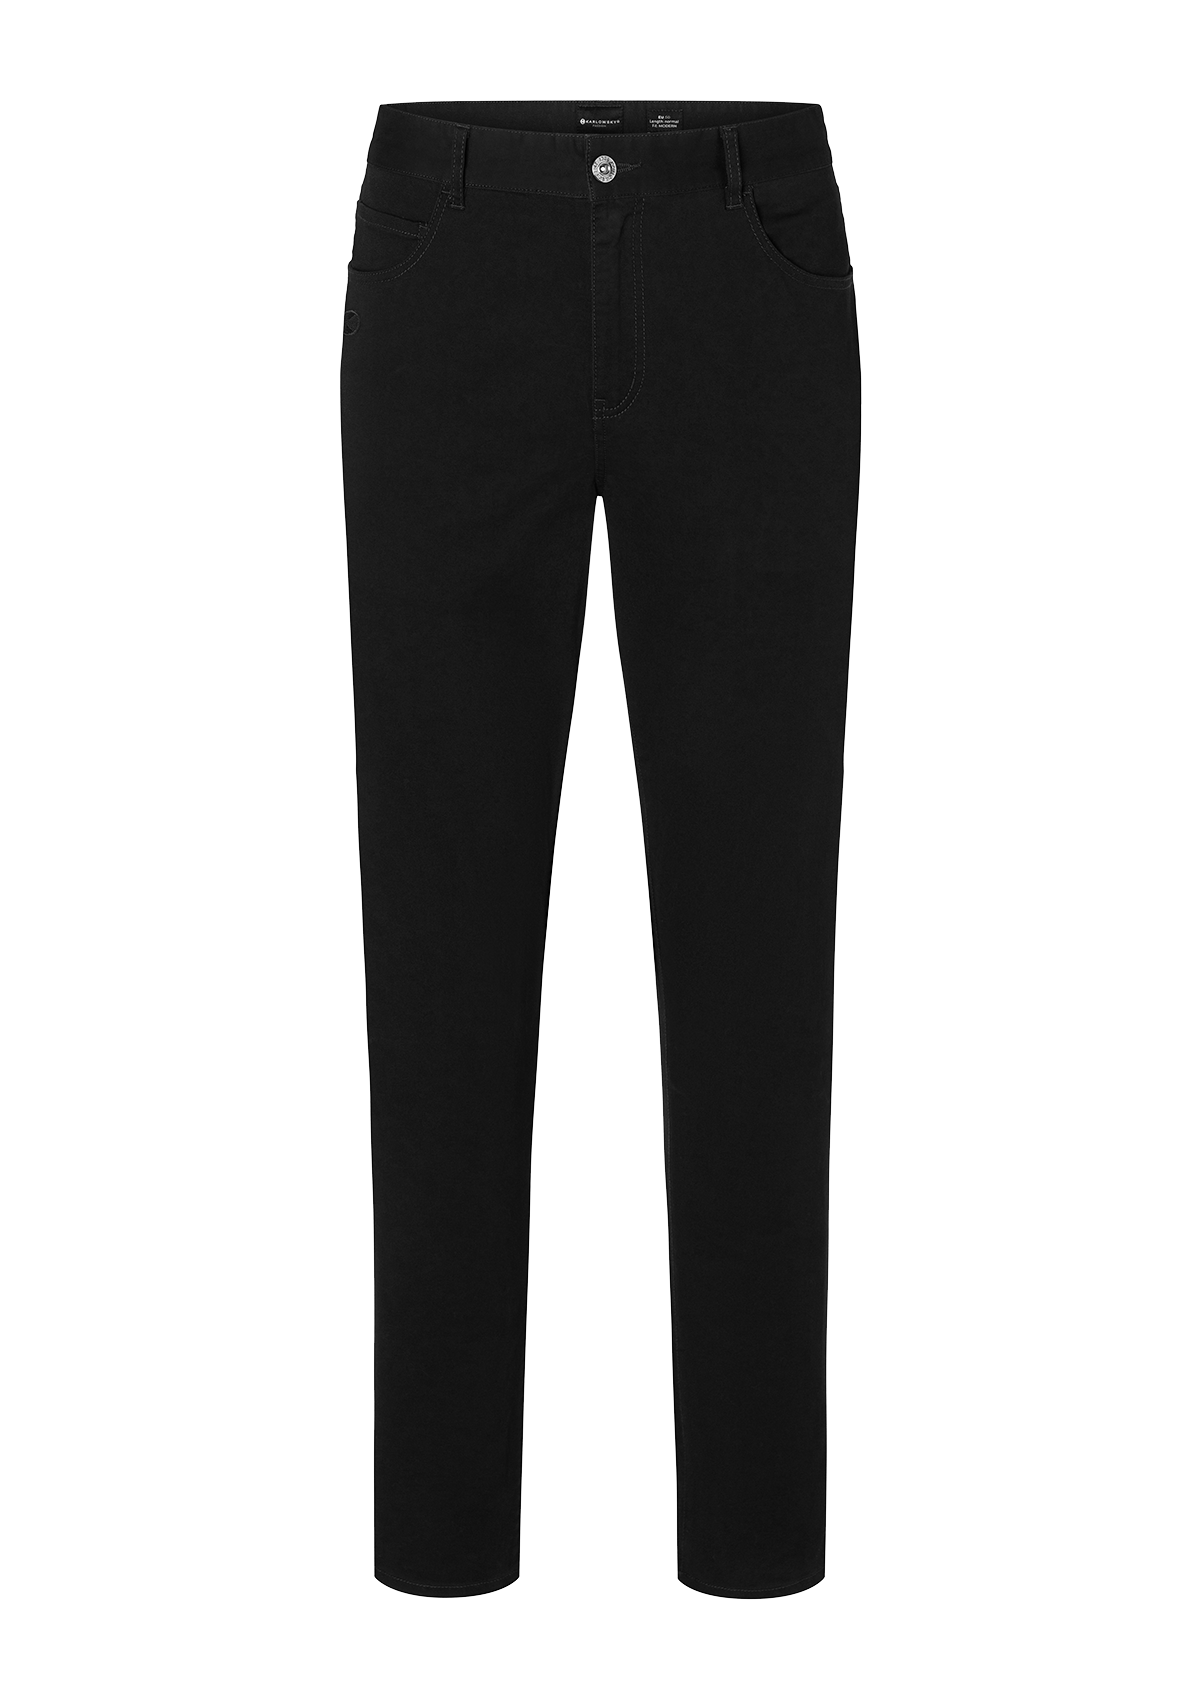 Men's 5-Pocket Trousers - Black or White